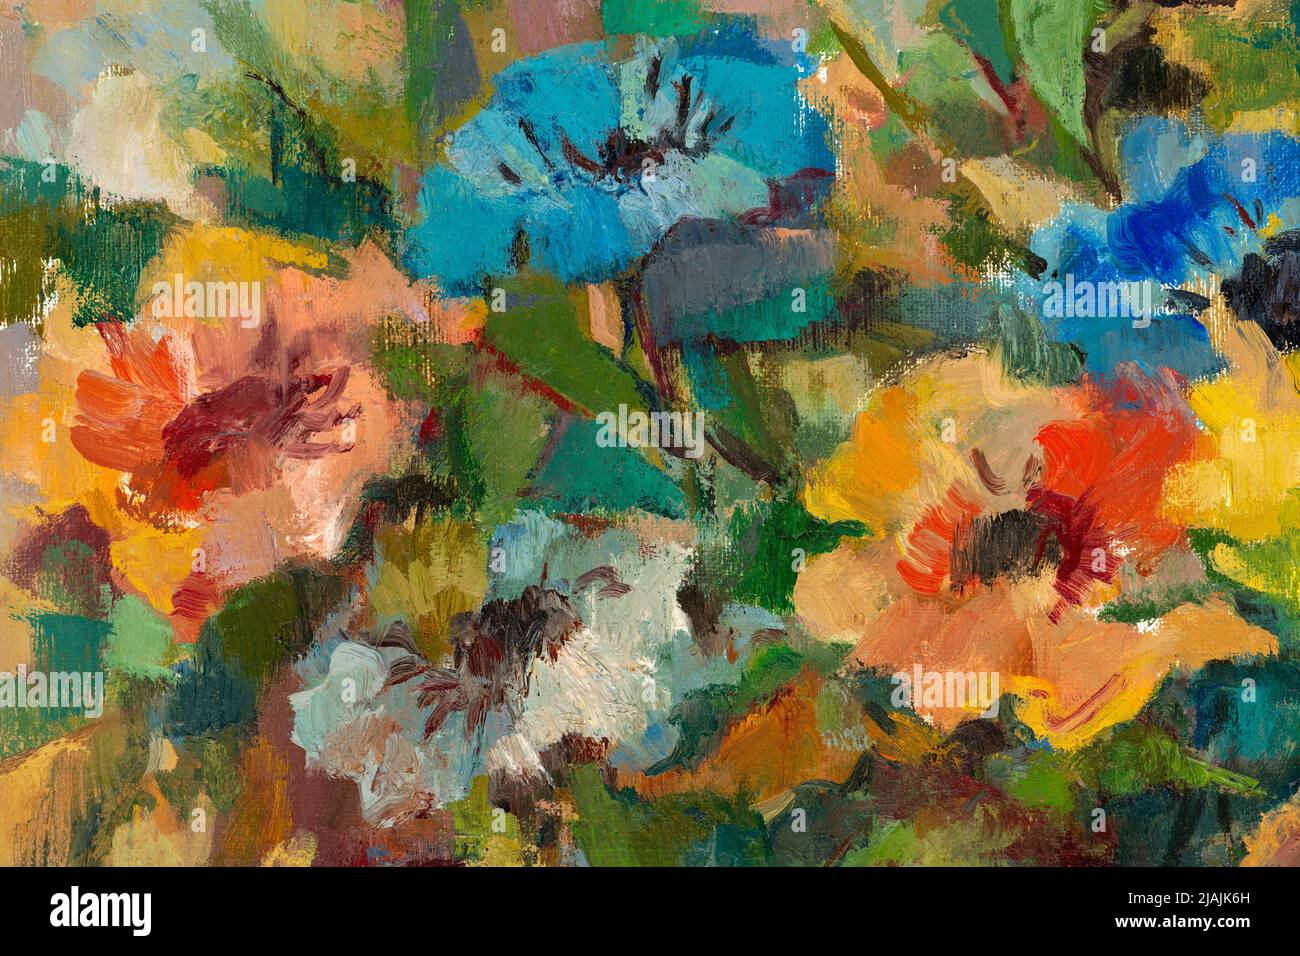 Gros plan d'une peinture à l'huile de style impressionniste représentant un bouquet de fleurs pastel. Banque D'Images